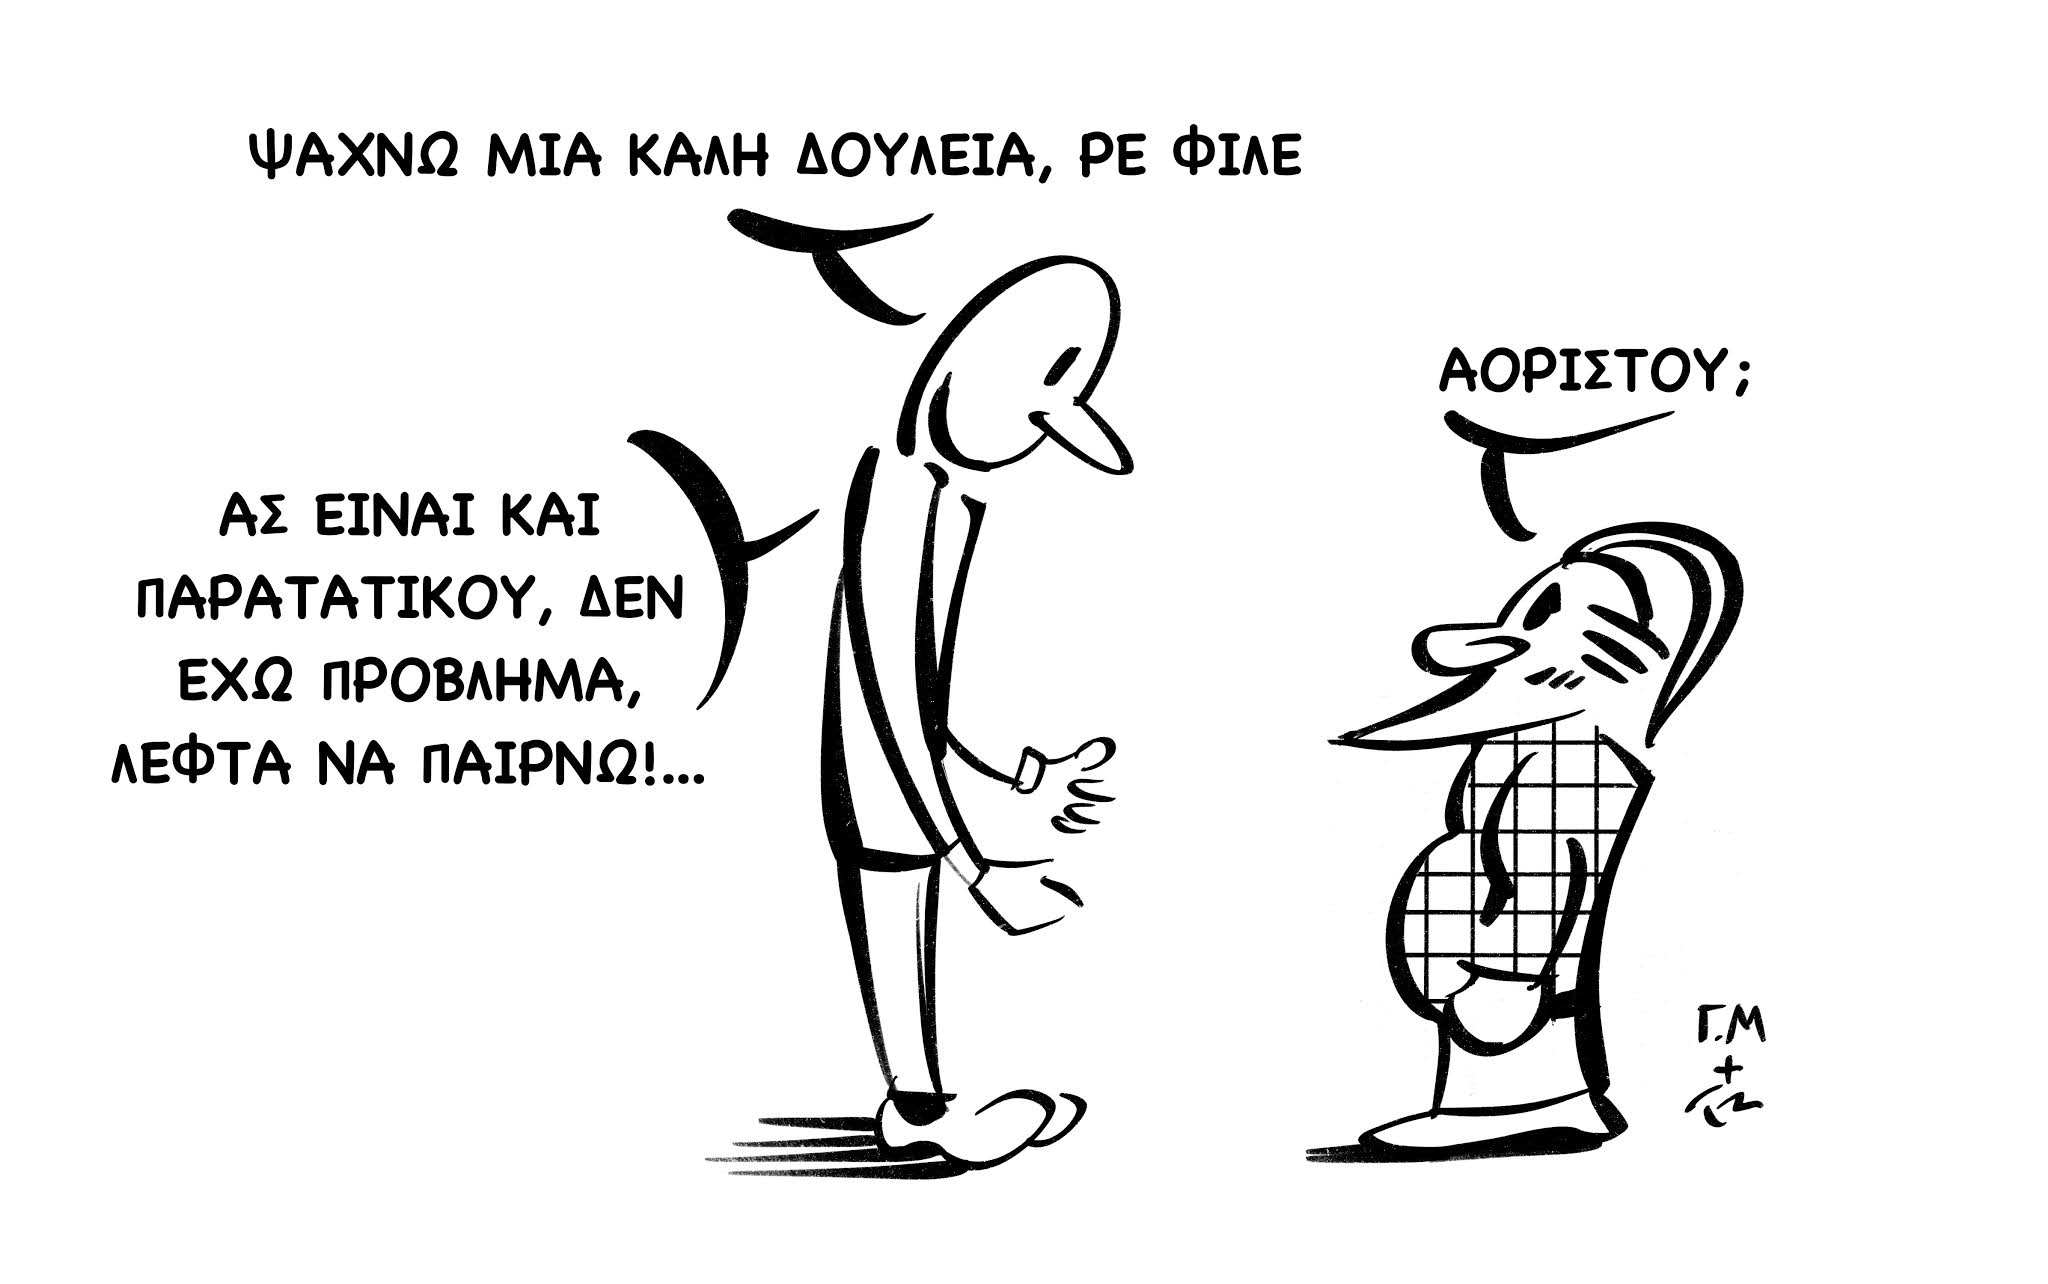 Το XanthiNea.gr παρουσιάζει τη στήλη "Το σκίτσο της εβδομάδας" με σατιρικά σκίτσα που επιμελούνται ο εικονογράφος Νίκος Πολυχρονόπουλος και ο δημοσιογράφος Γιώργος Μαυρίδης. Εικονογράφηση: Νίκος Πολυχρονόπουλος (https://www.instagram.com/nikpolych/ - nikpolych@gmail.com)  Κείμενο: Γιώργος Μαυρίδης